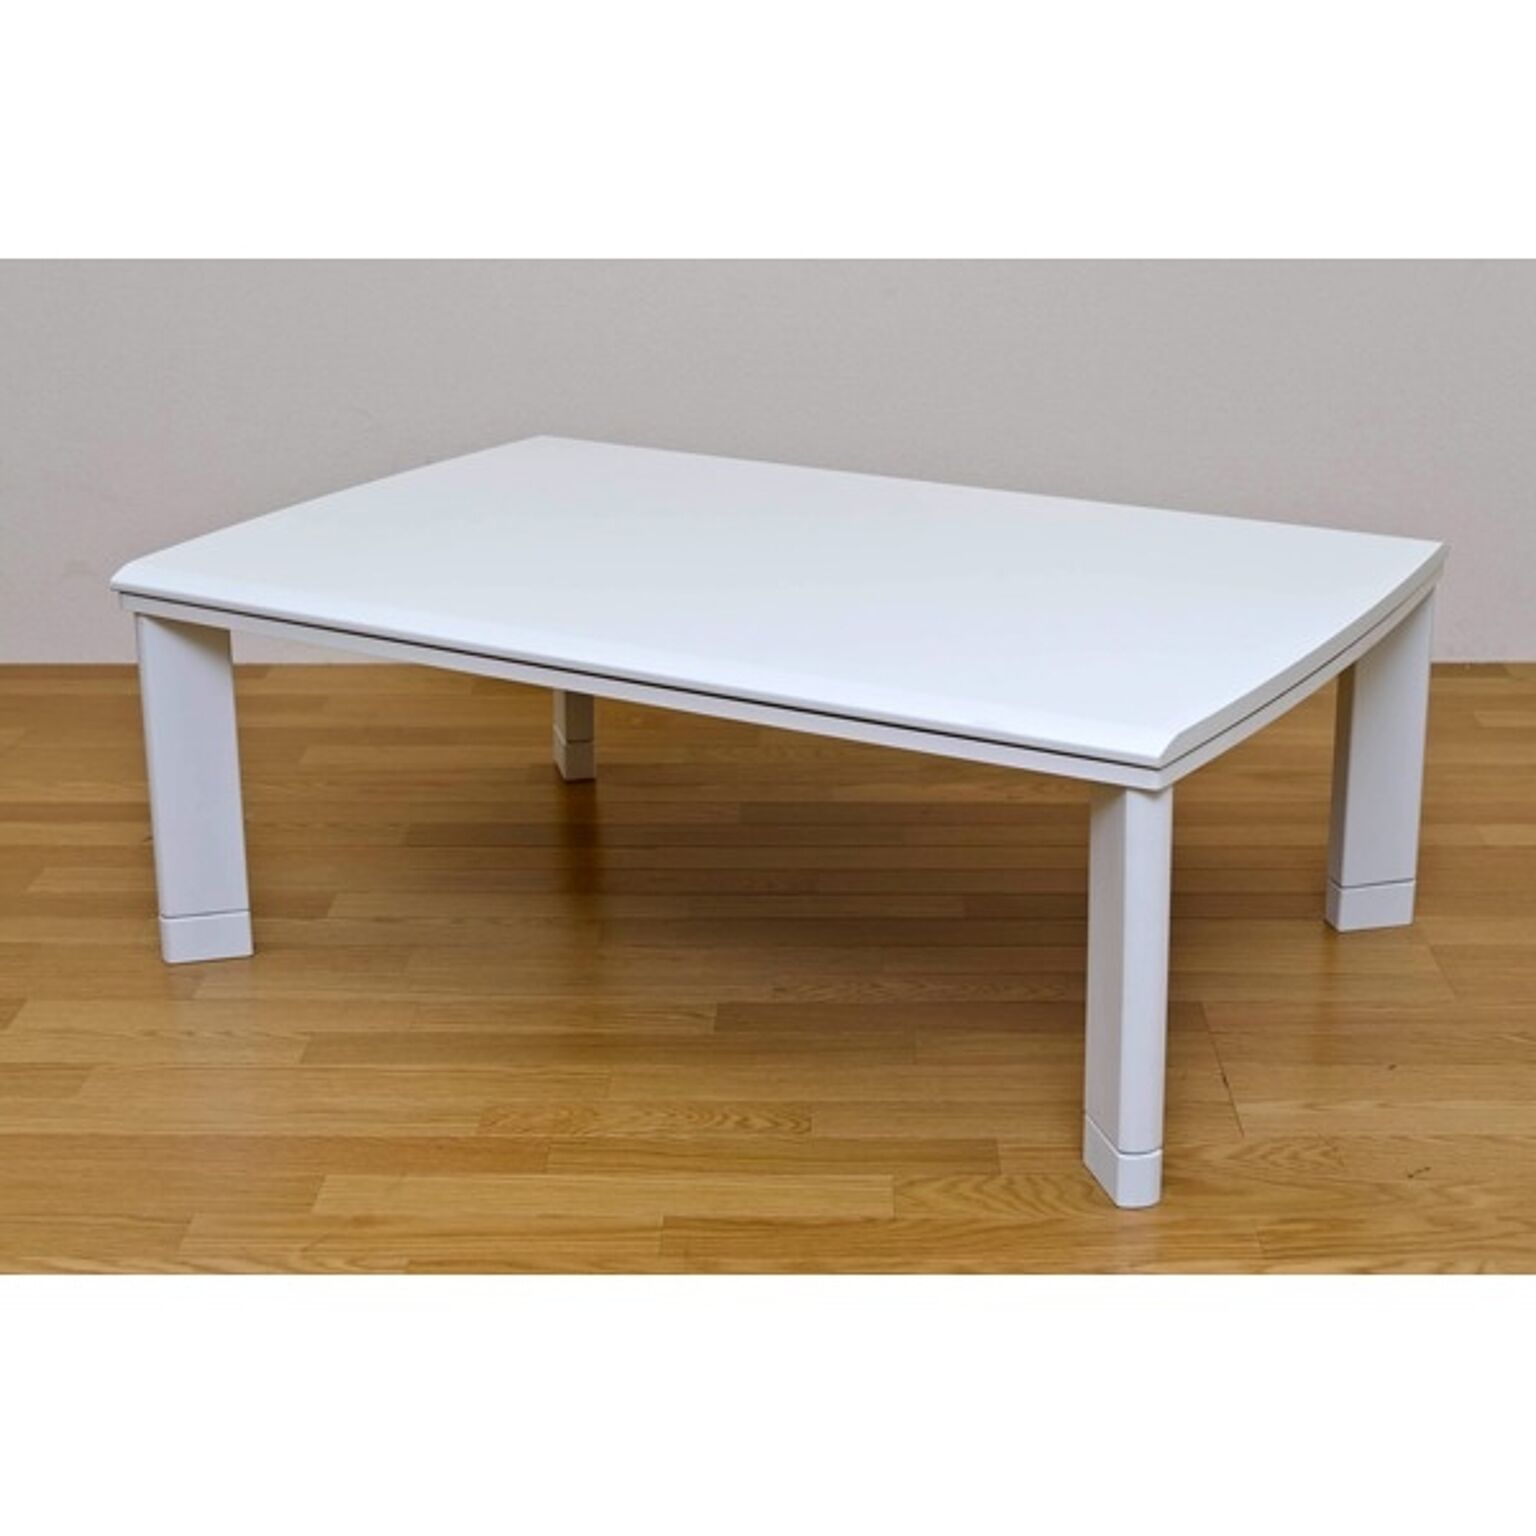 継ぎ足式モダンこたつテーブル 本体 長方形/120cm×80cm ホワイト(白) 木製 本体 高さ調節可 テーパー加工